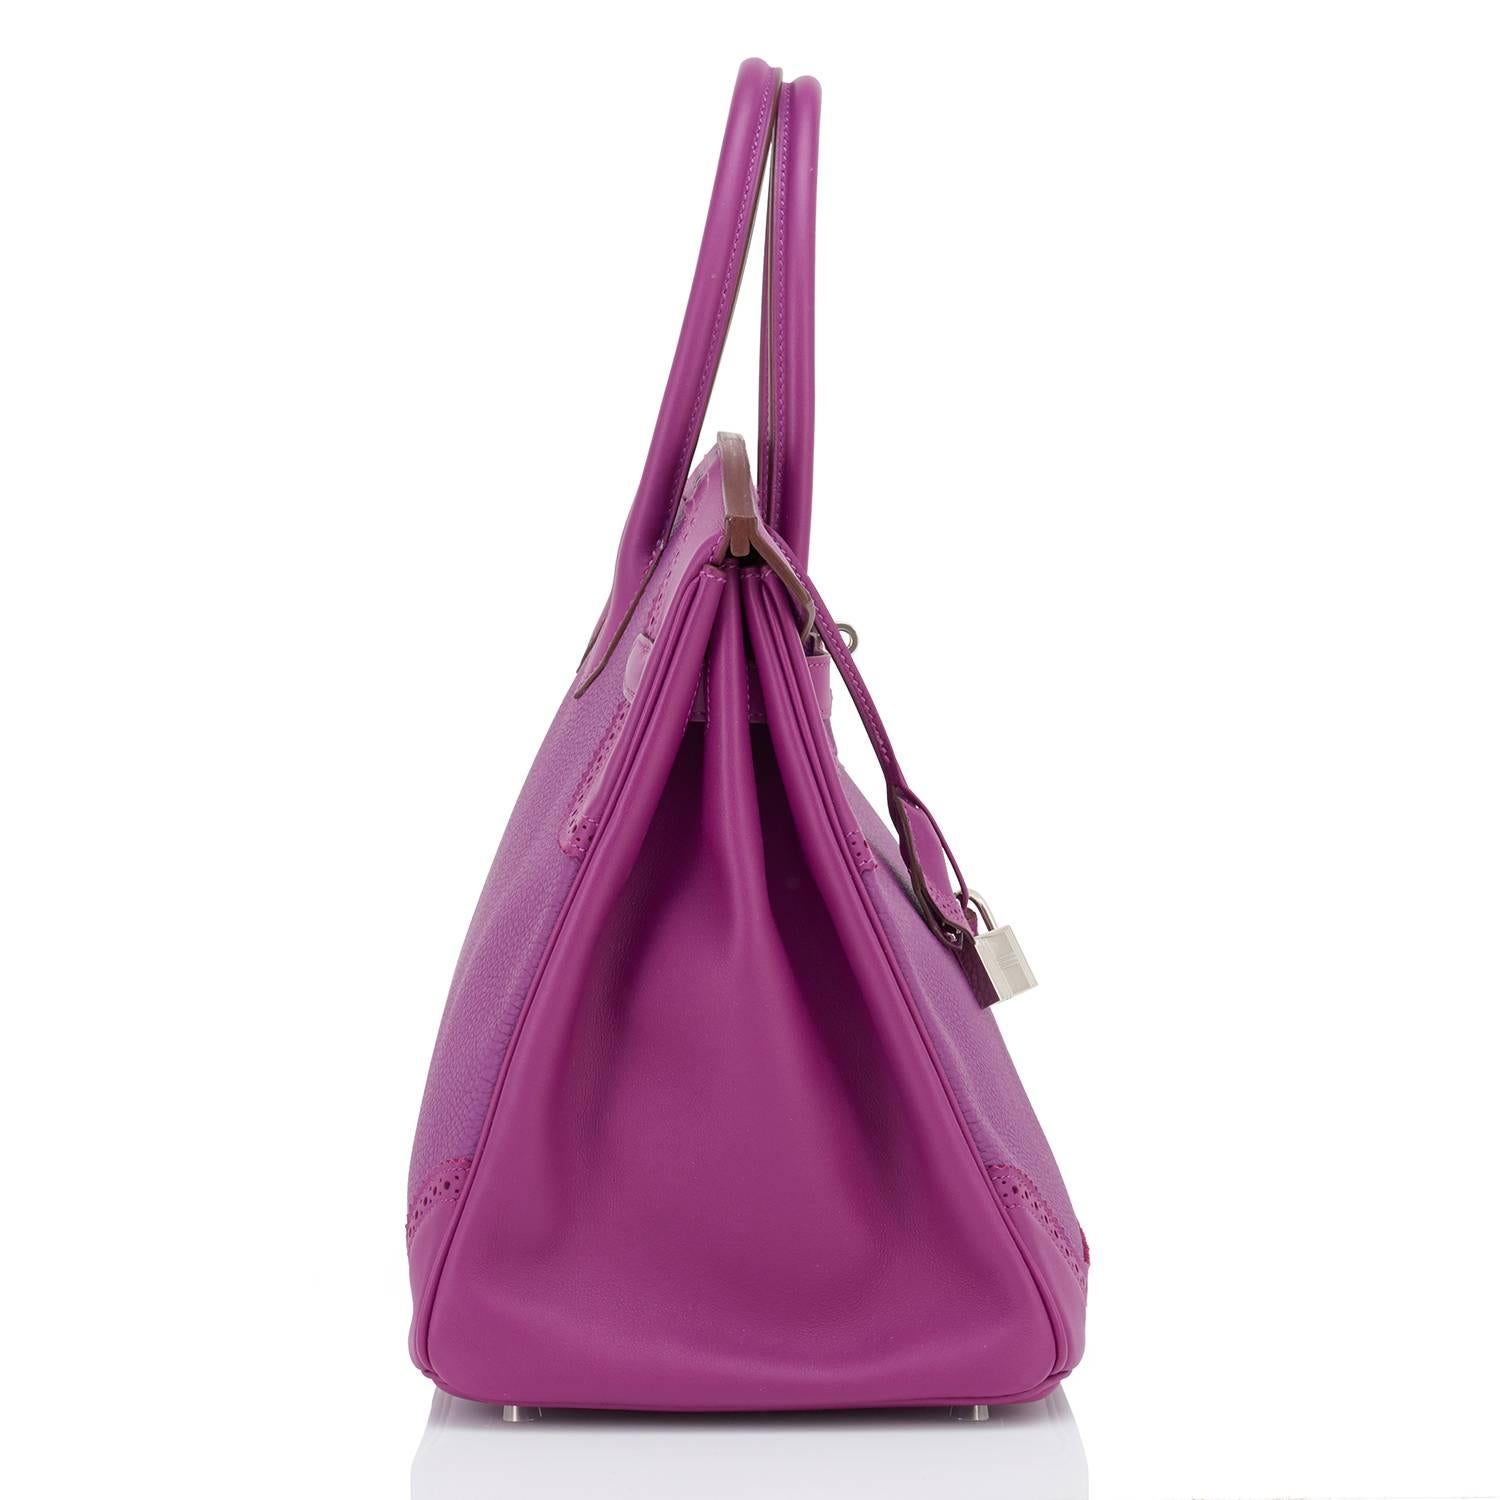 Purple Hermes Anemone Ghillies Togo Swift Birkin Bag 35cm Palladium Hardware Limited